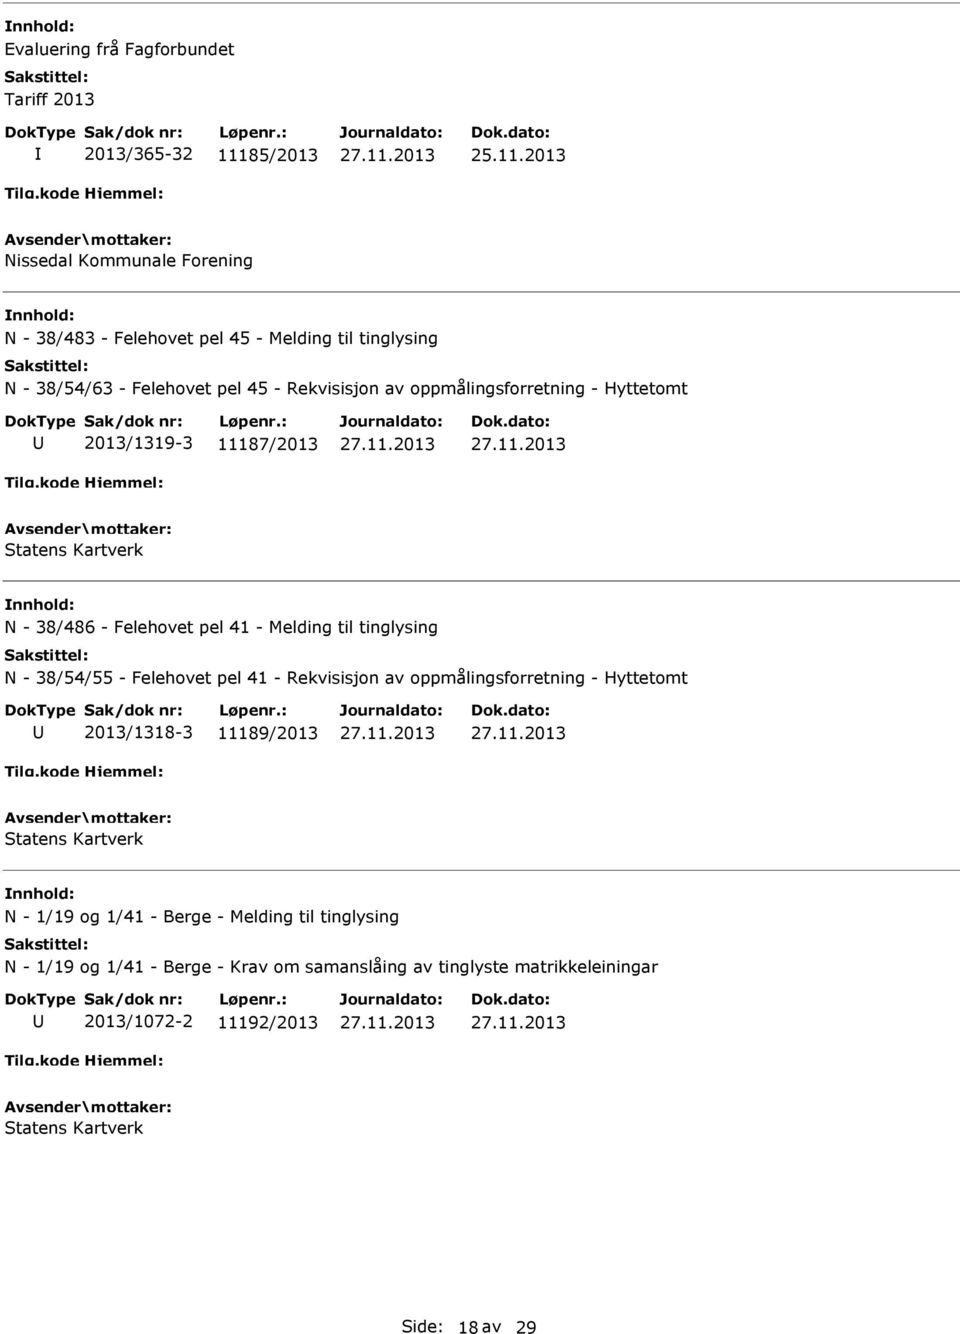 Melding til tinglysing N - 38/54/55 - Felehovet pel 41 - Rekvisisjon av oppmålingsforretning - Hyttetomt 2013/1318-3 11189/2013 Statens Kartverk N - 1/19 og